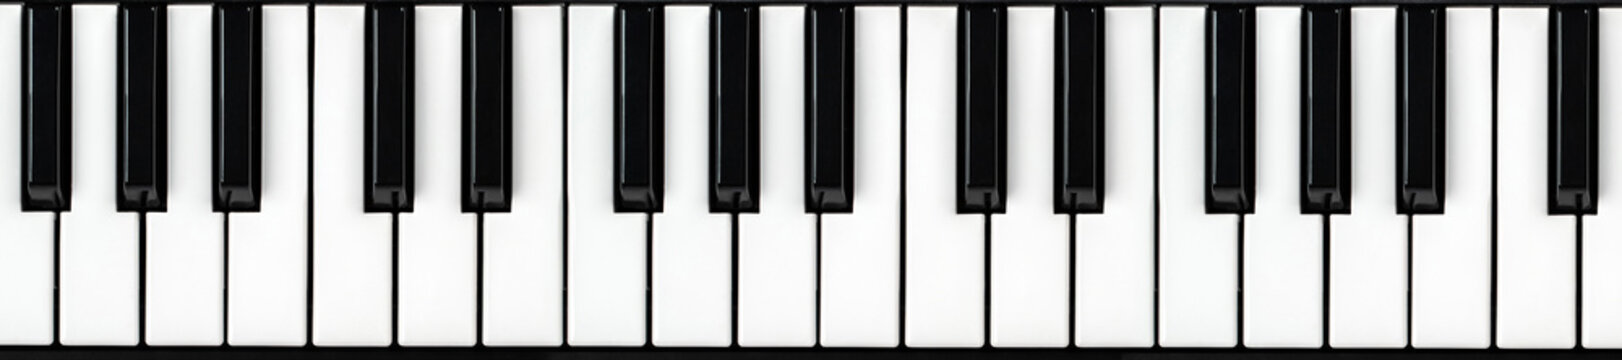 Synthesizer keyboard. Piano key